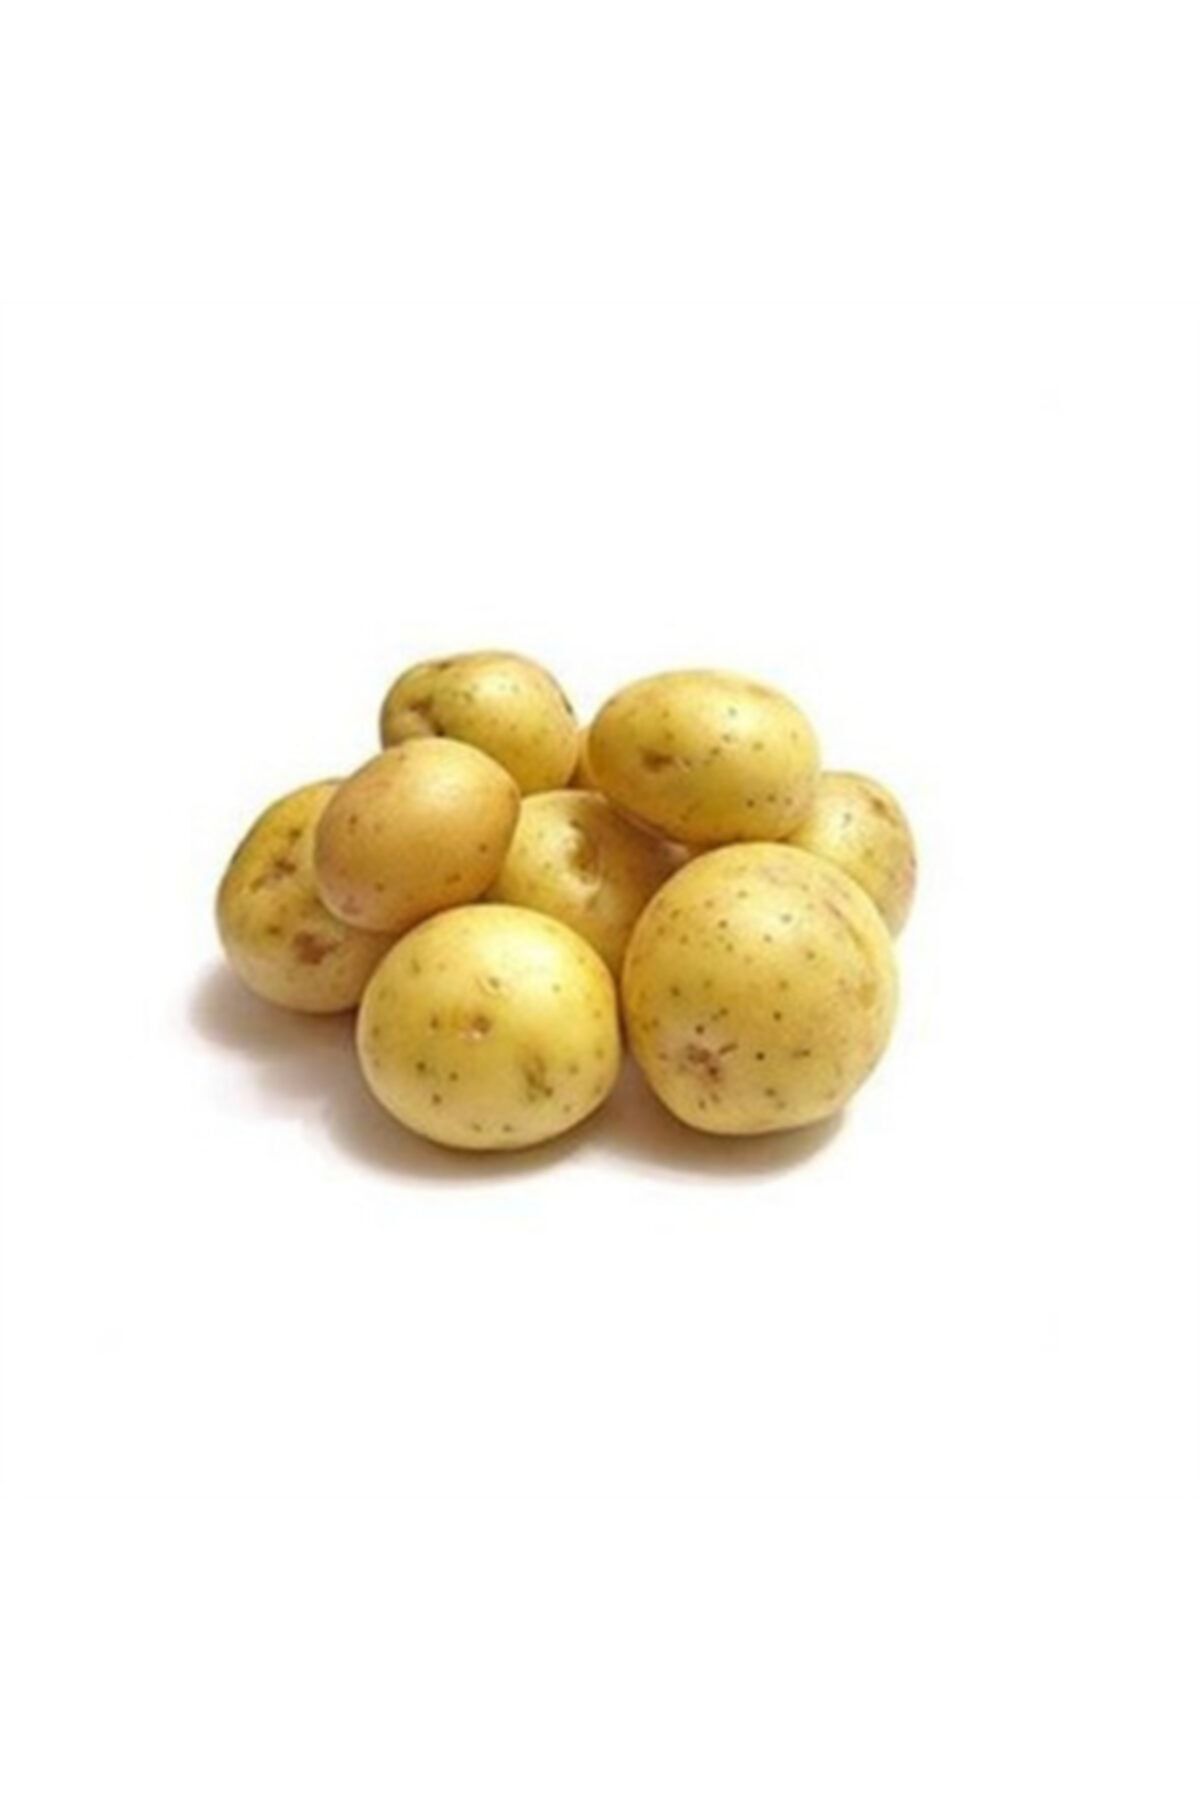 Yenir tarım ürünleri Patates Baby (3KG)